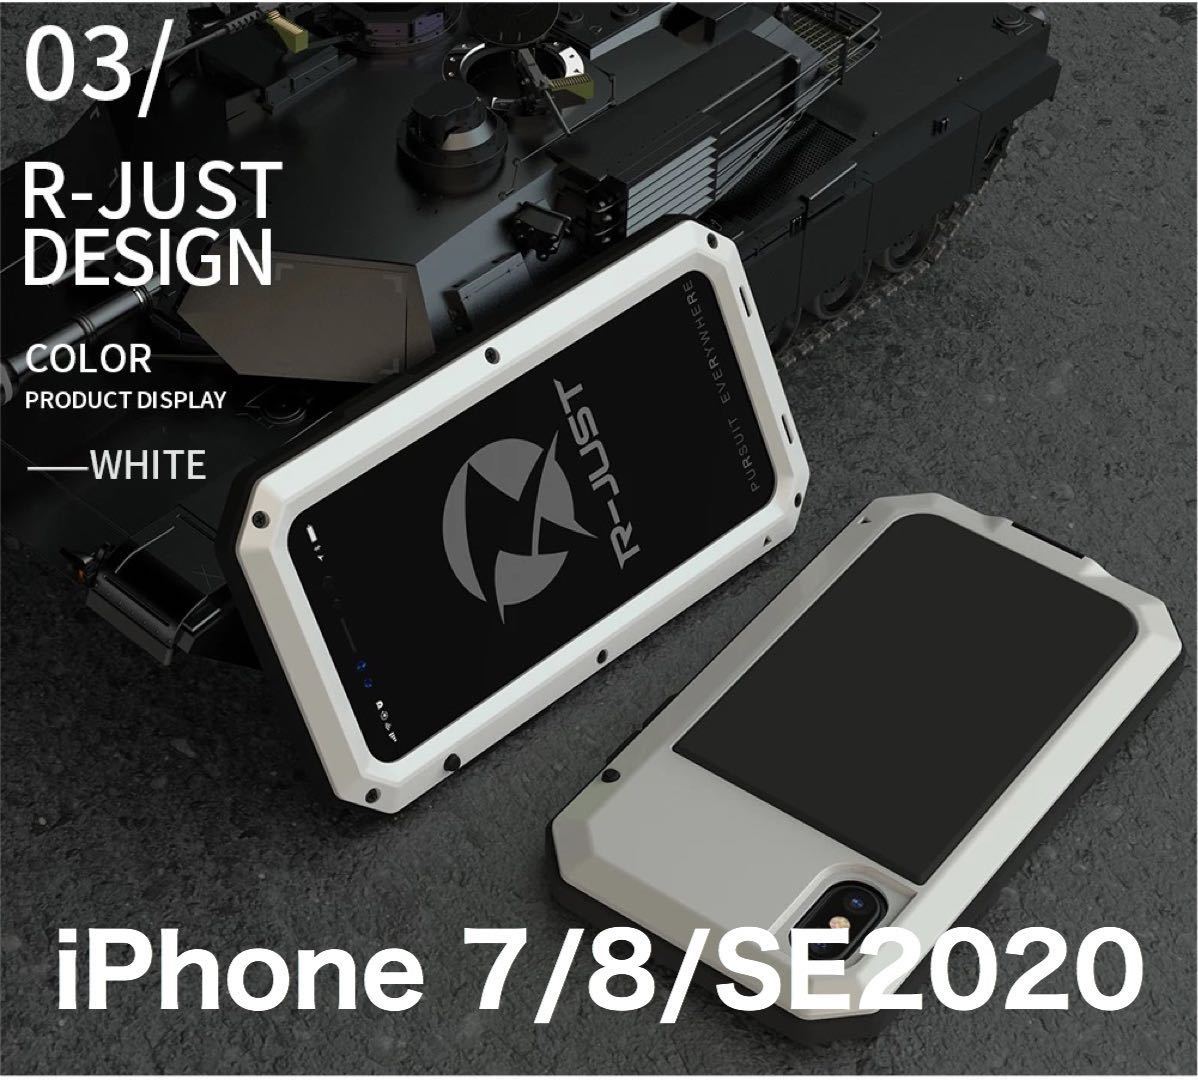 【新品】iPhone 7/8/SE2020 バンパー ケース 対衝撃 防水 防塵 頑丈 高級 アーミー 白 ホワイト_画像1